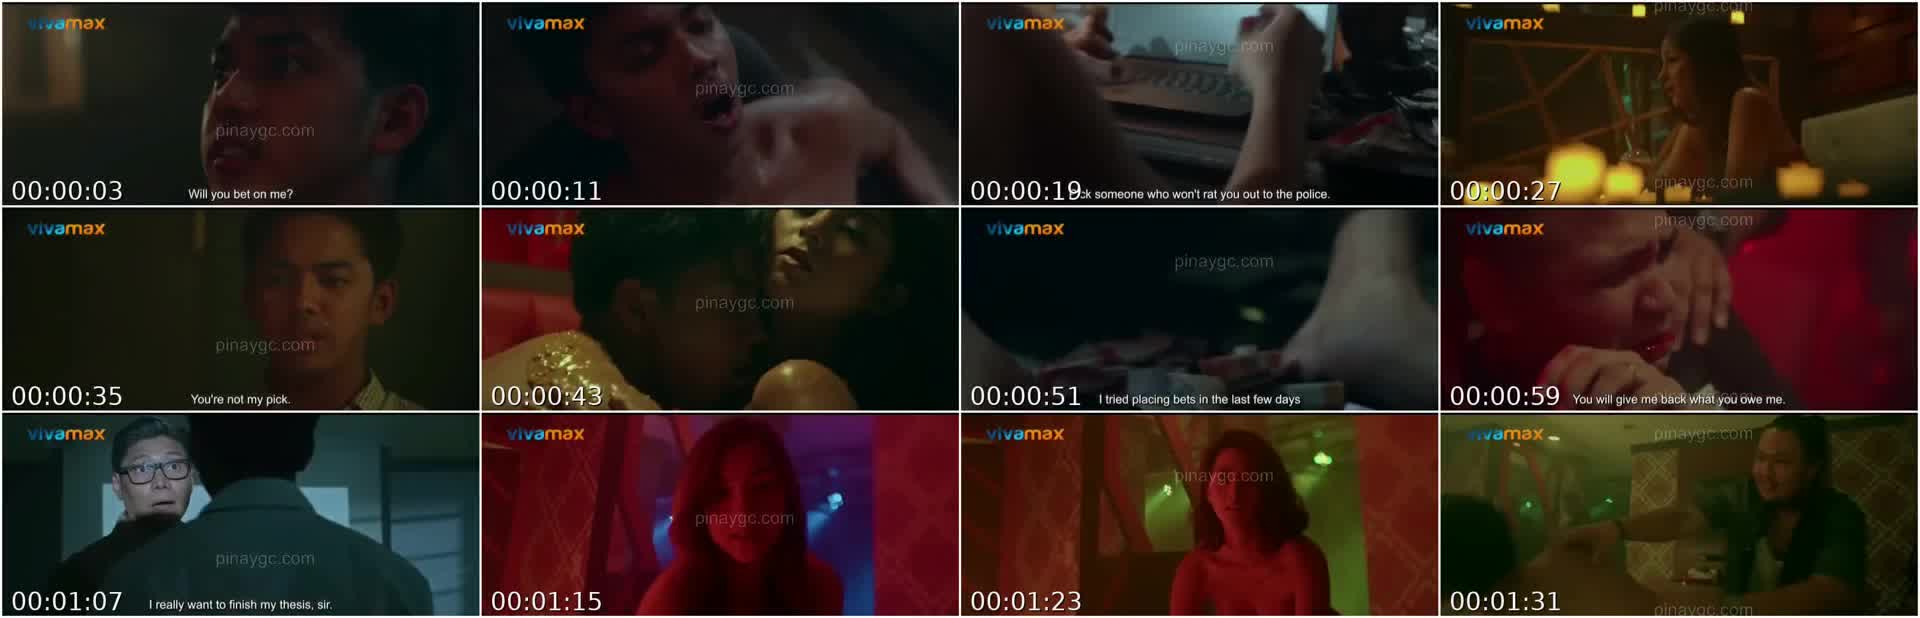 Aj raval sex scene in taya movie